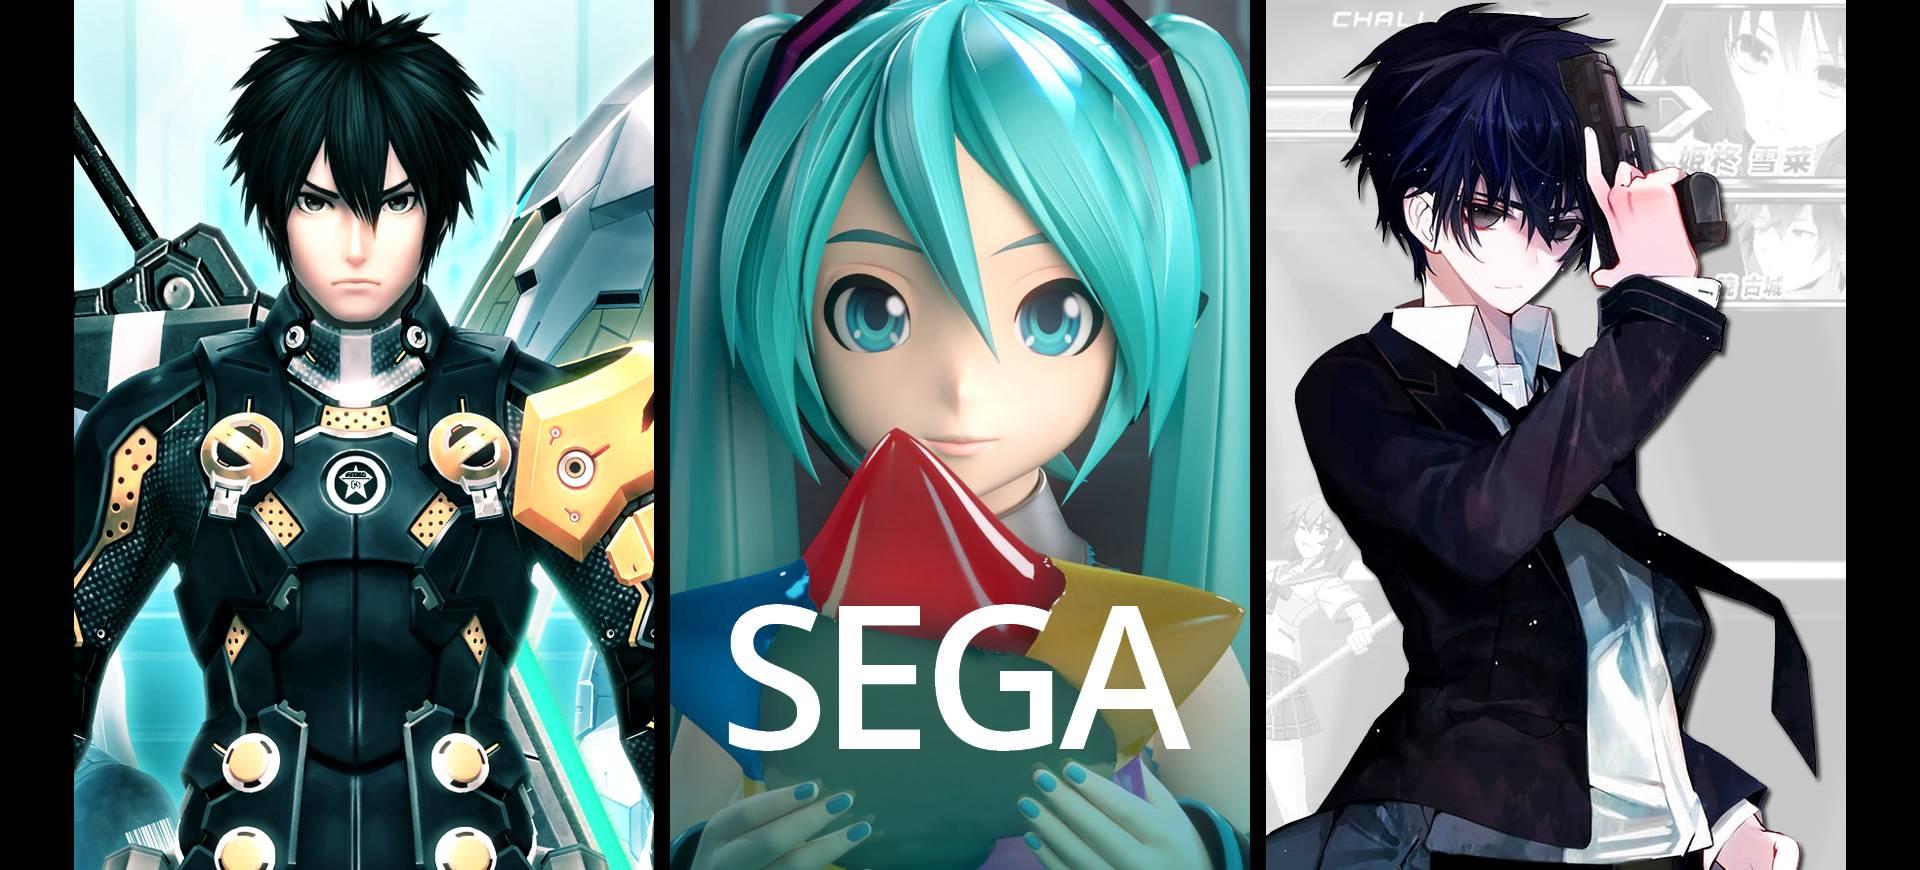 TGS 2015: Sega - Nhiều lượng, thiếu chất?